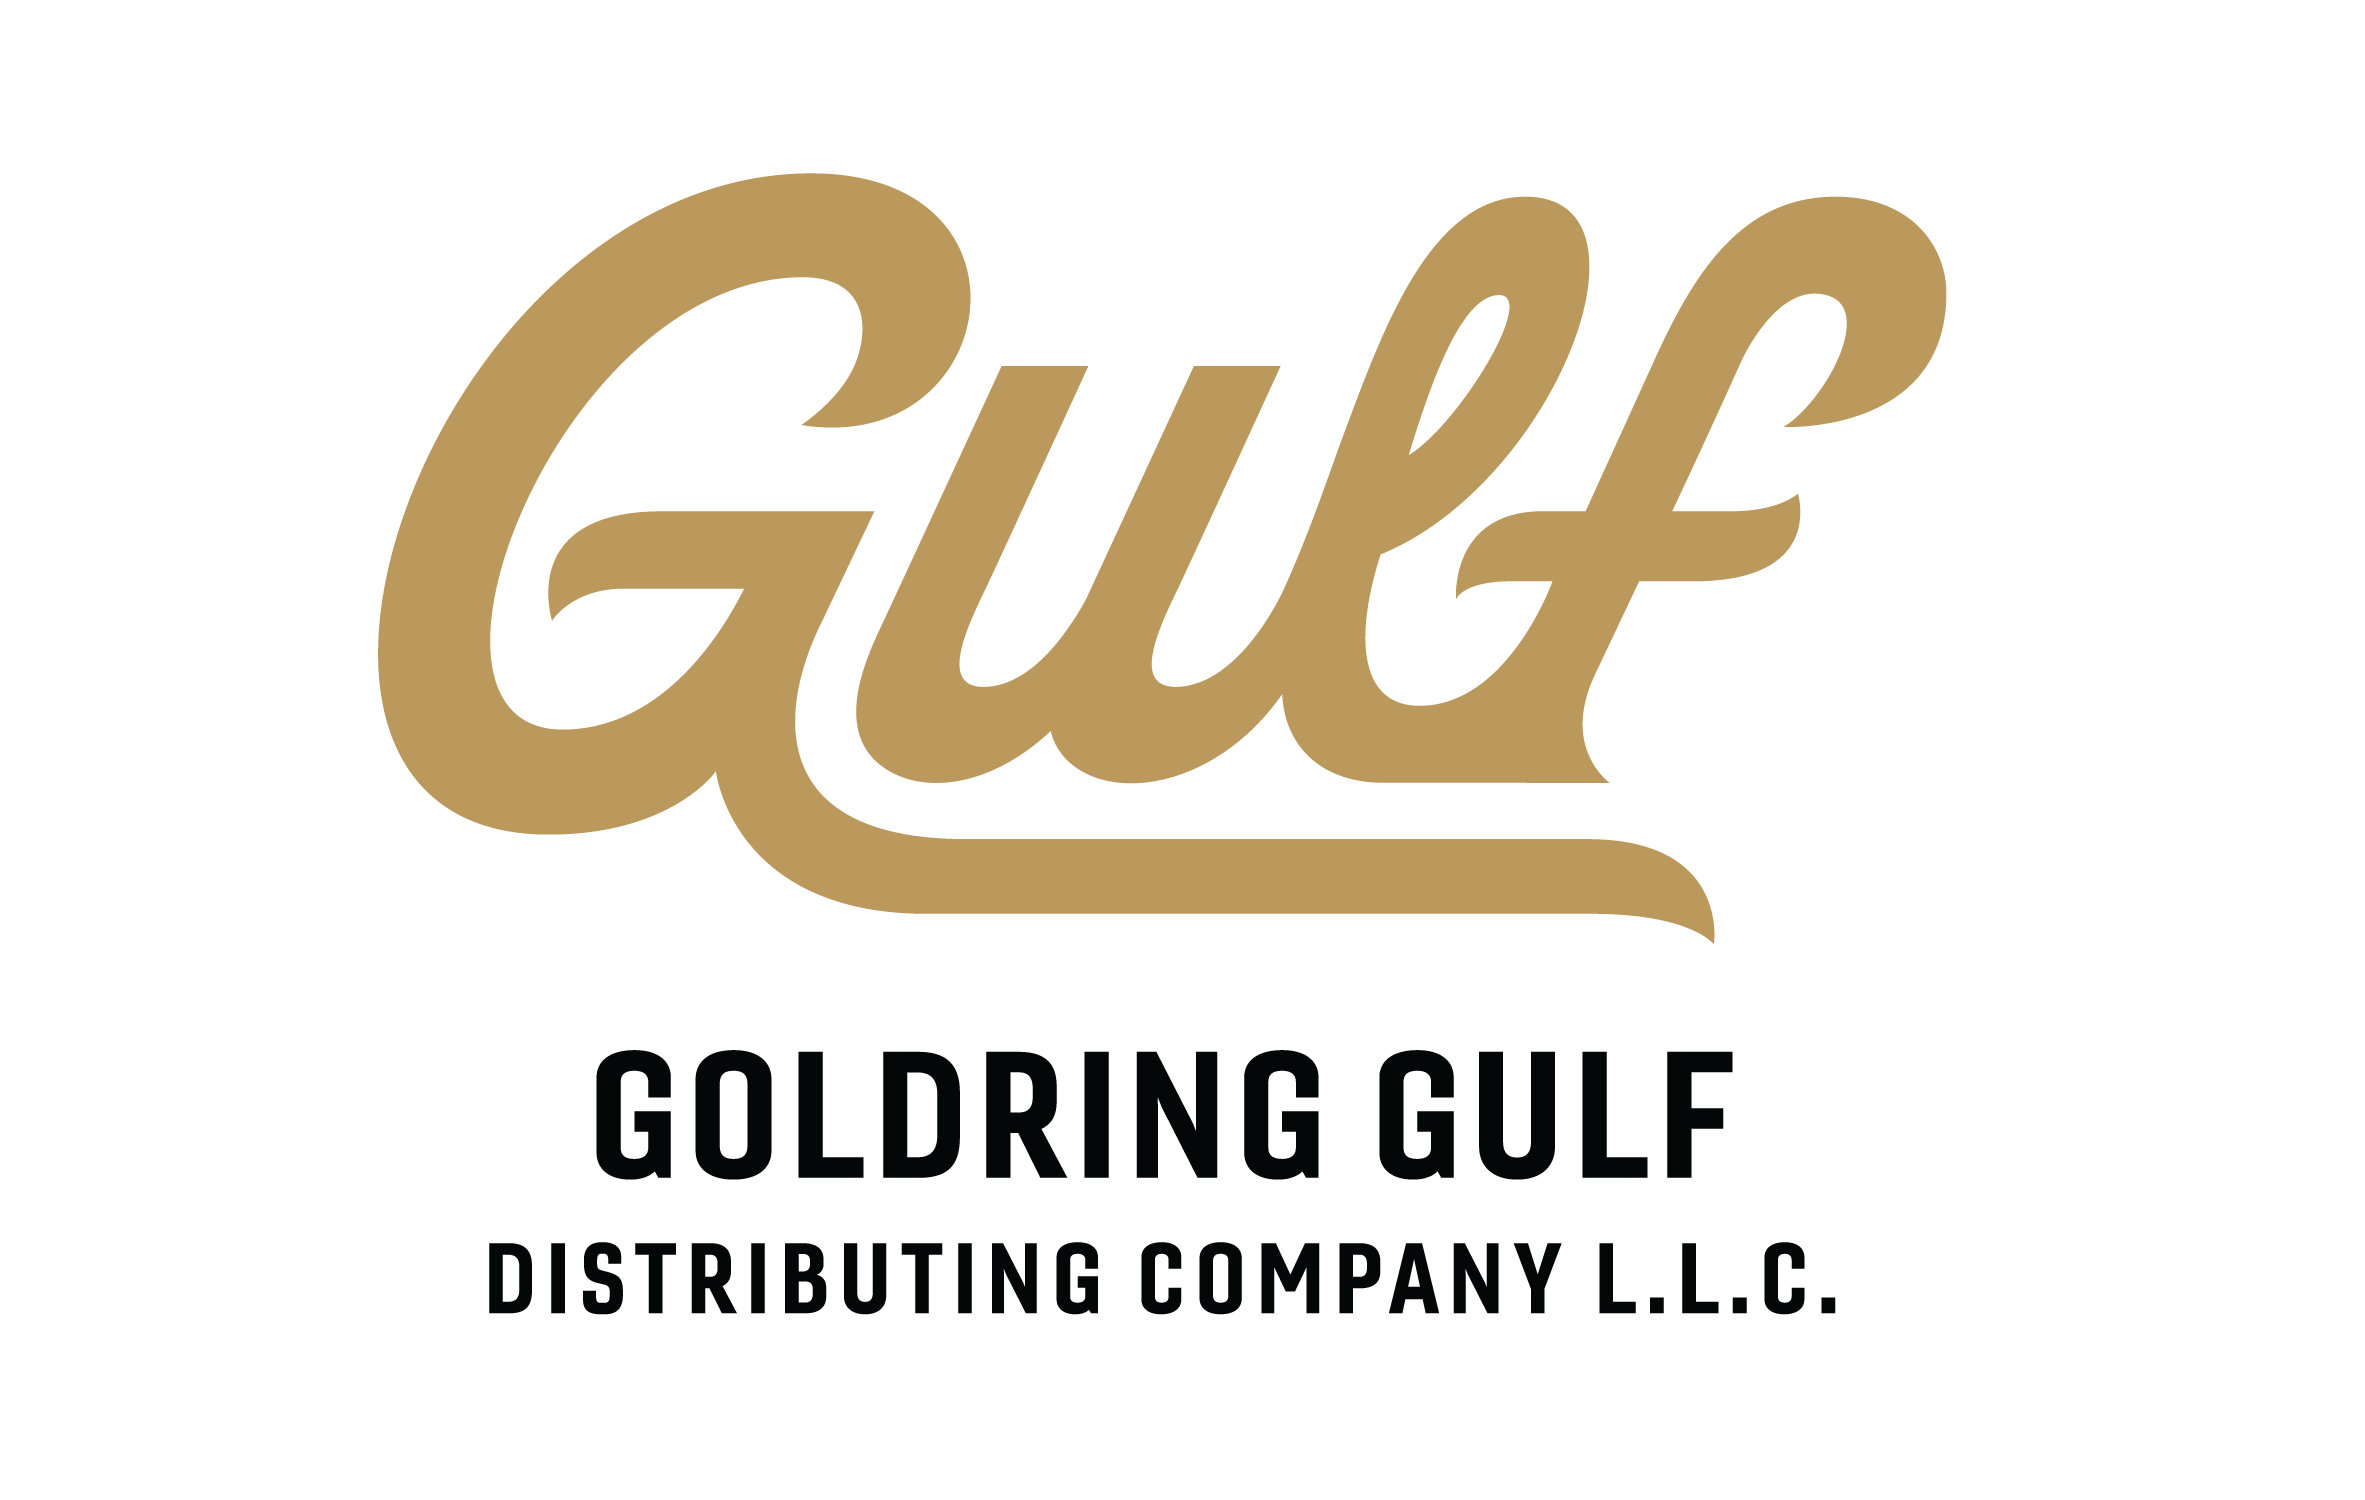 Goldring Gulf Distributing Logo